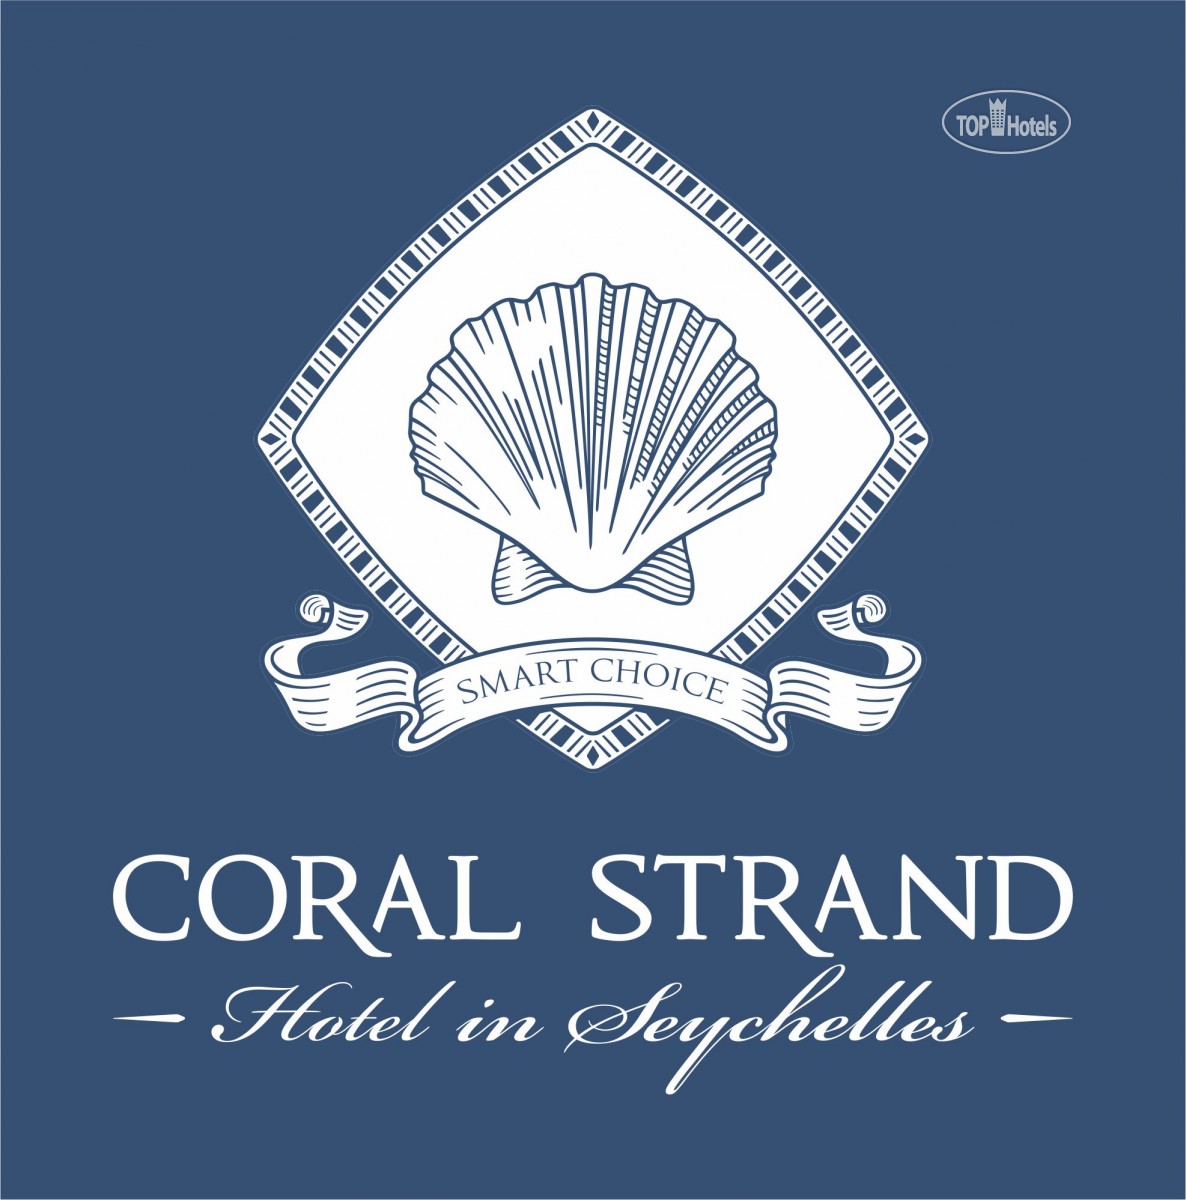 Coral strand smart